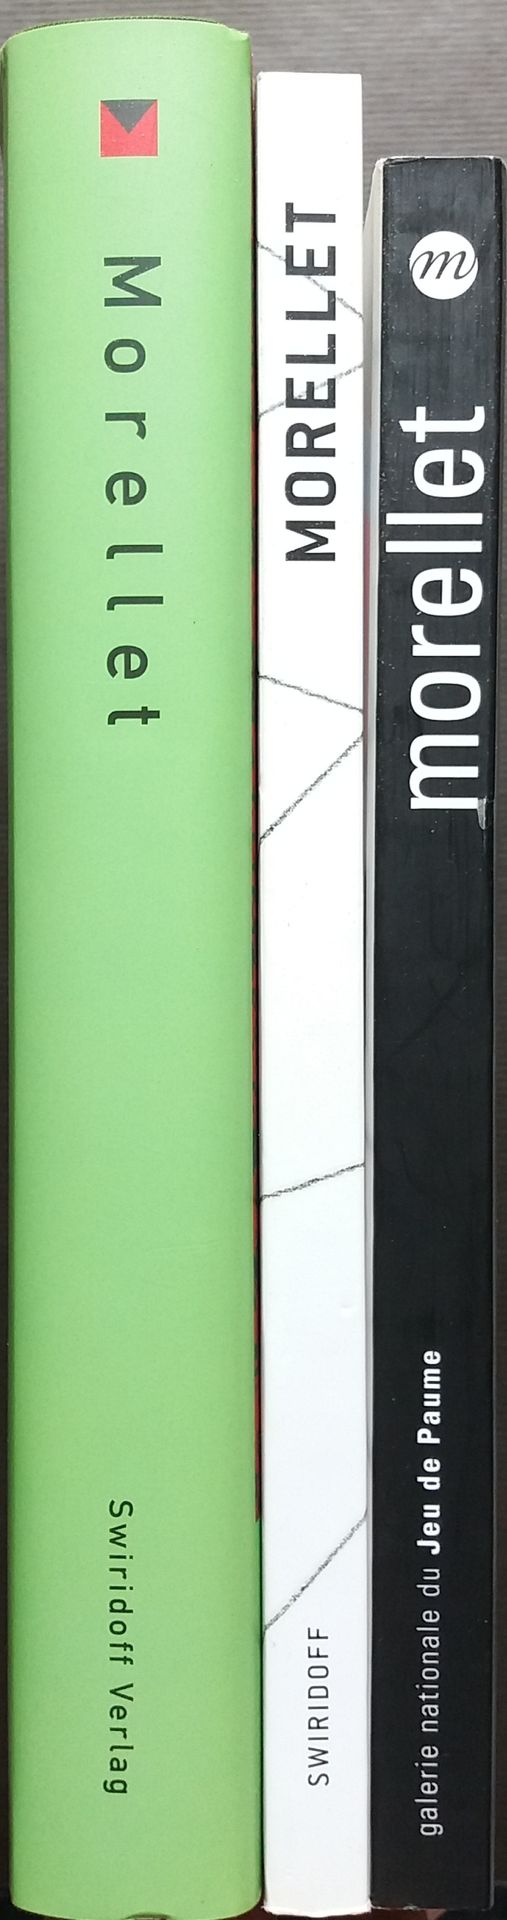 Null [ART - MORELLET, FRANCOIS]
Ensemble de 4 ouvrages.

*François Morellet. Rai&hellip;